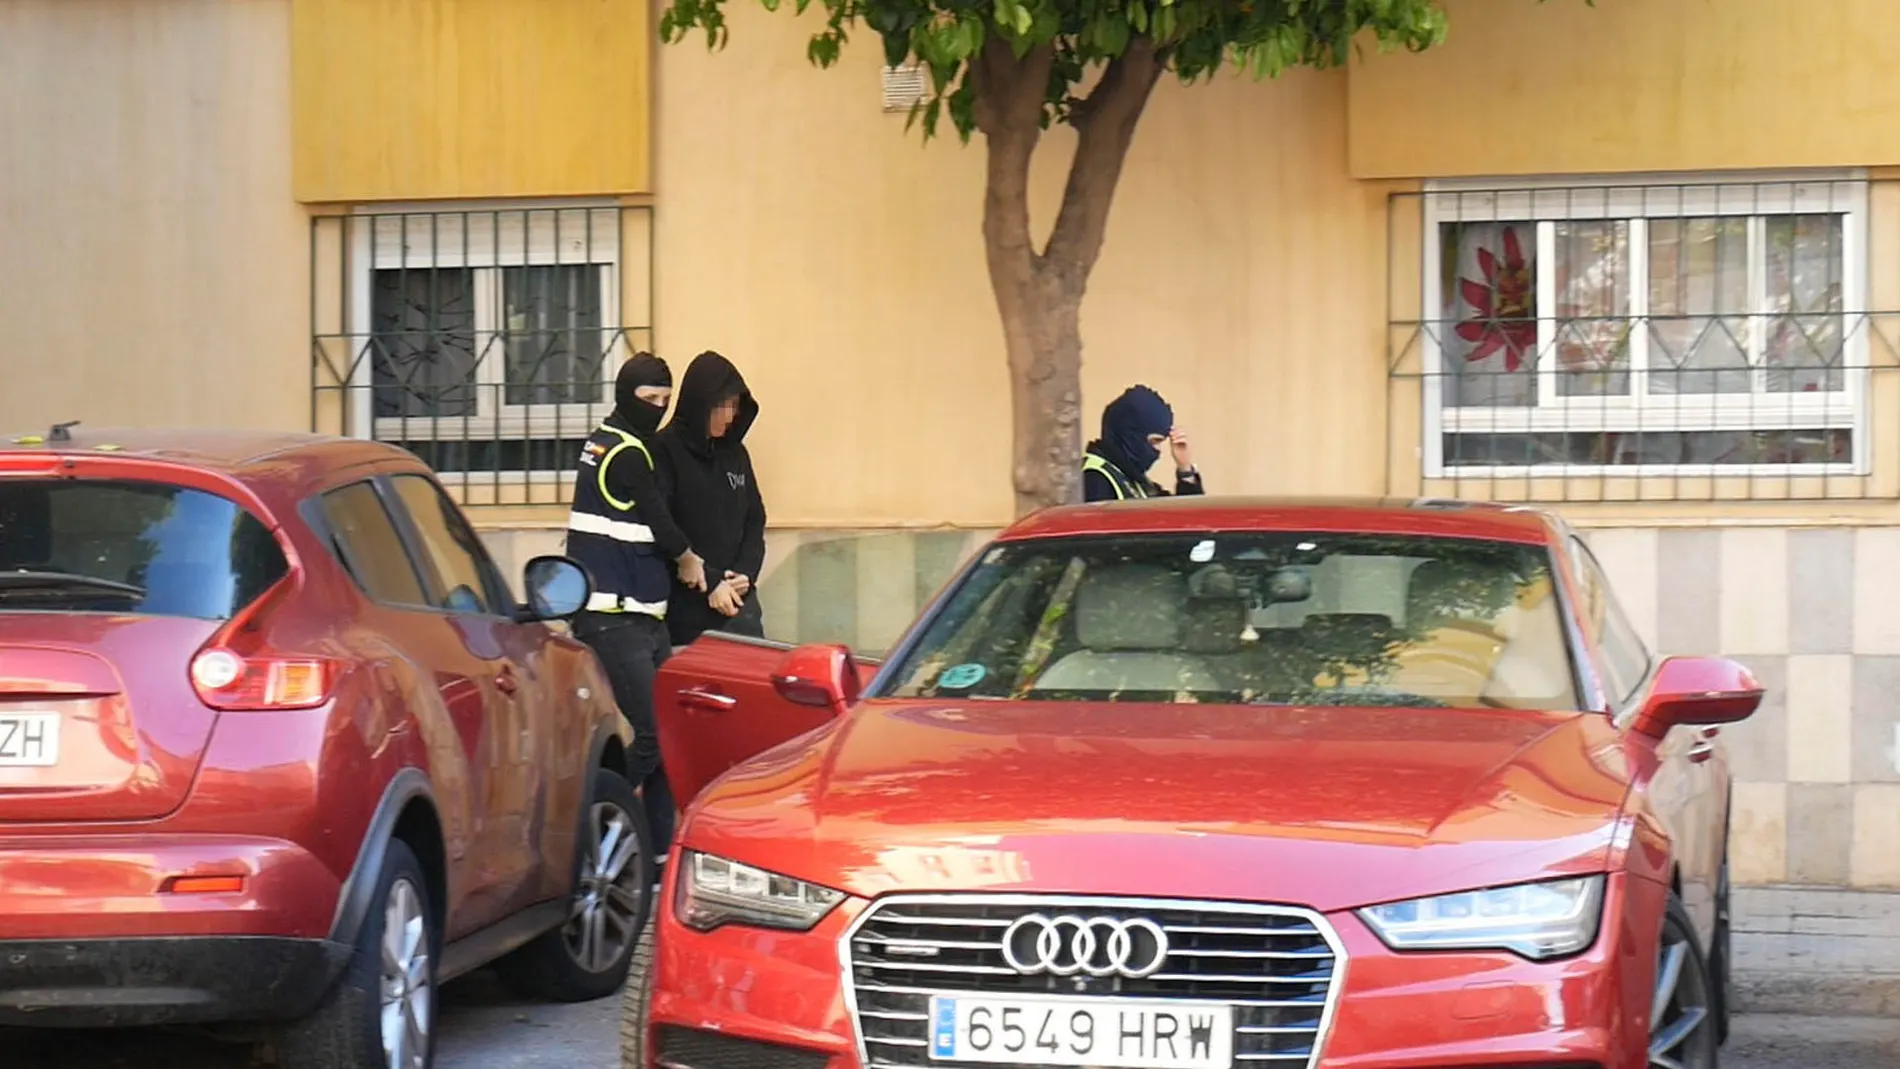 Segunda jornada de registros y detenciones en Melilla en la operación por corrupción Santiago-Rusadir.